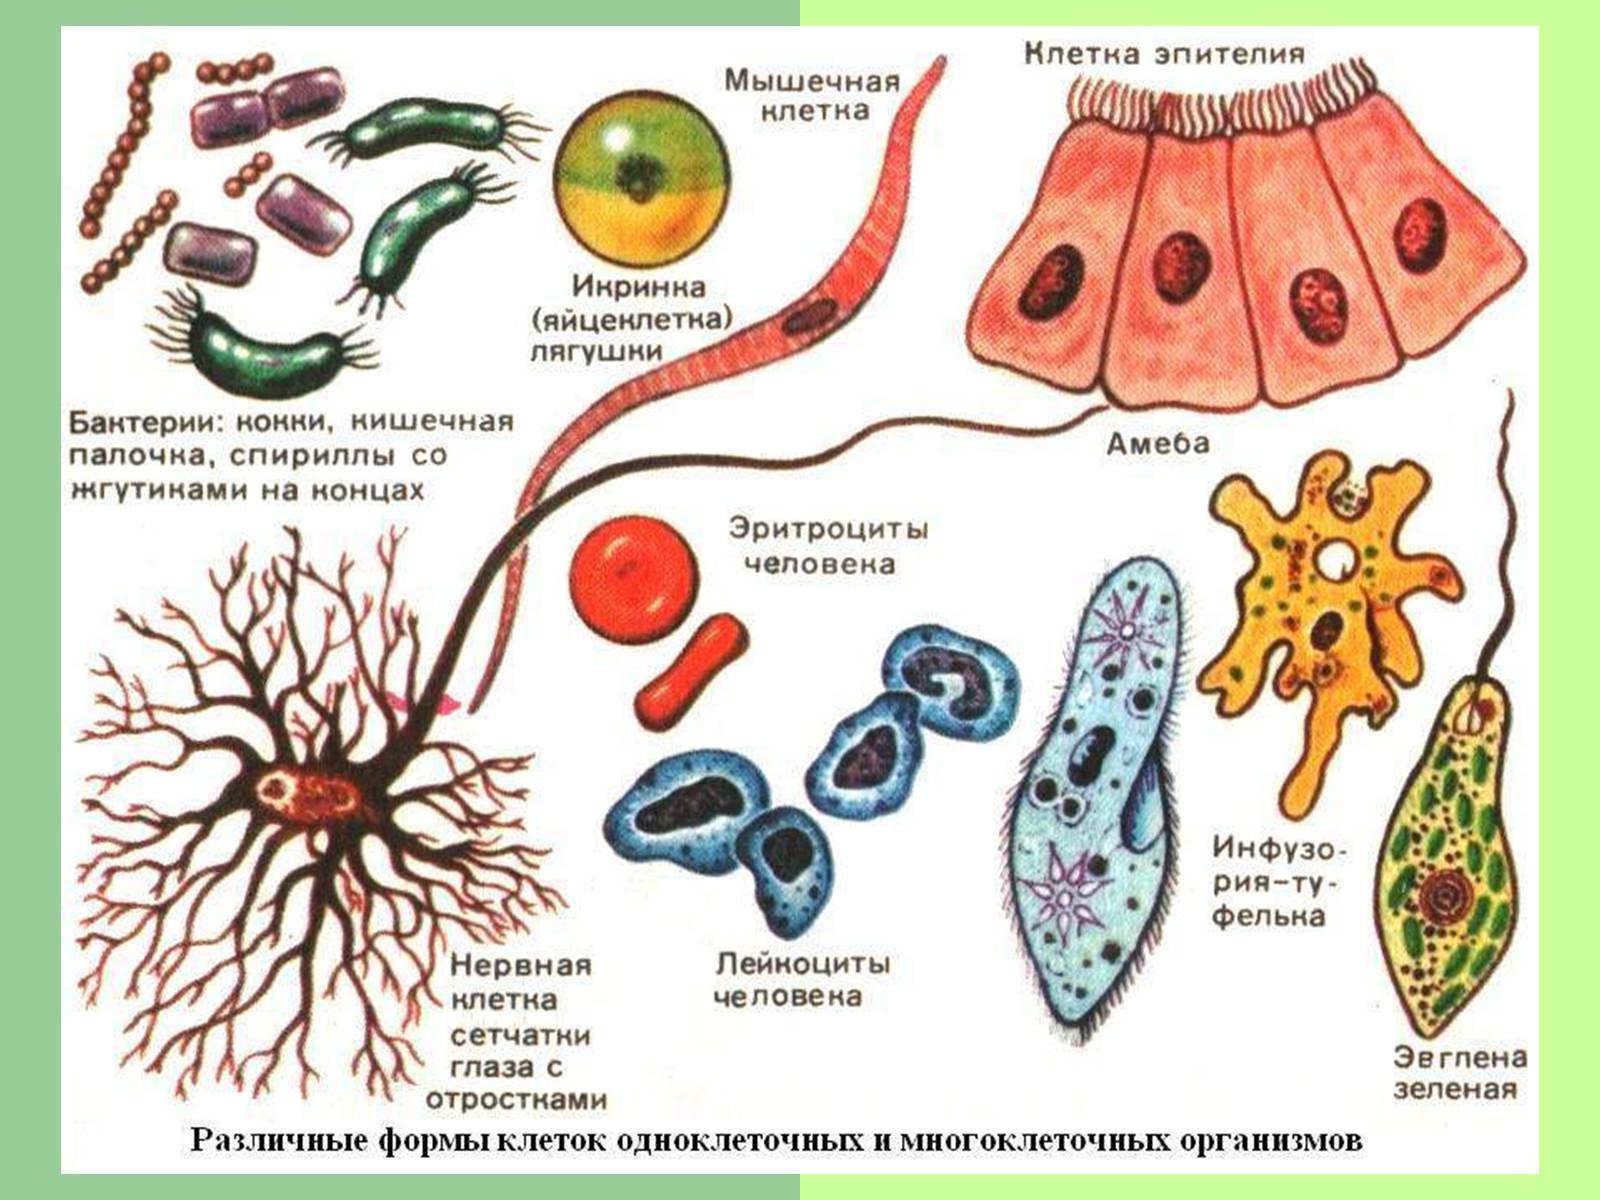 Формы клеток одноклеточных и многоклеточных организмов